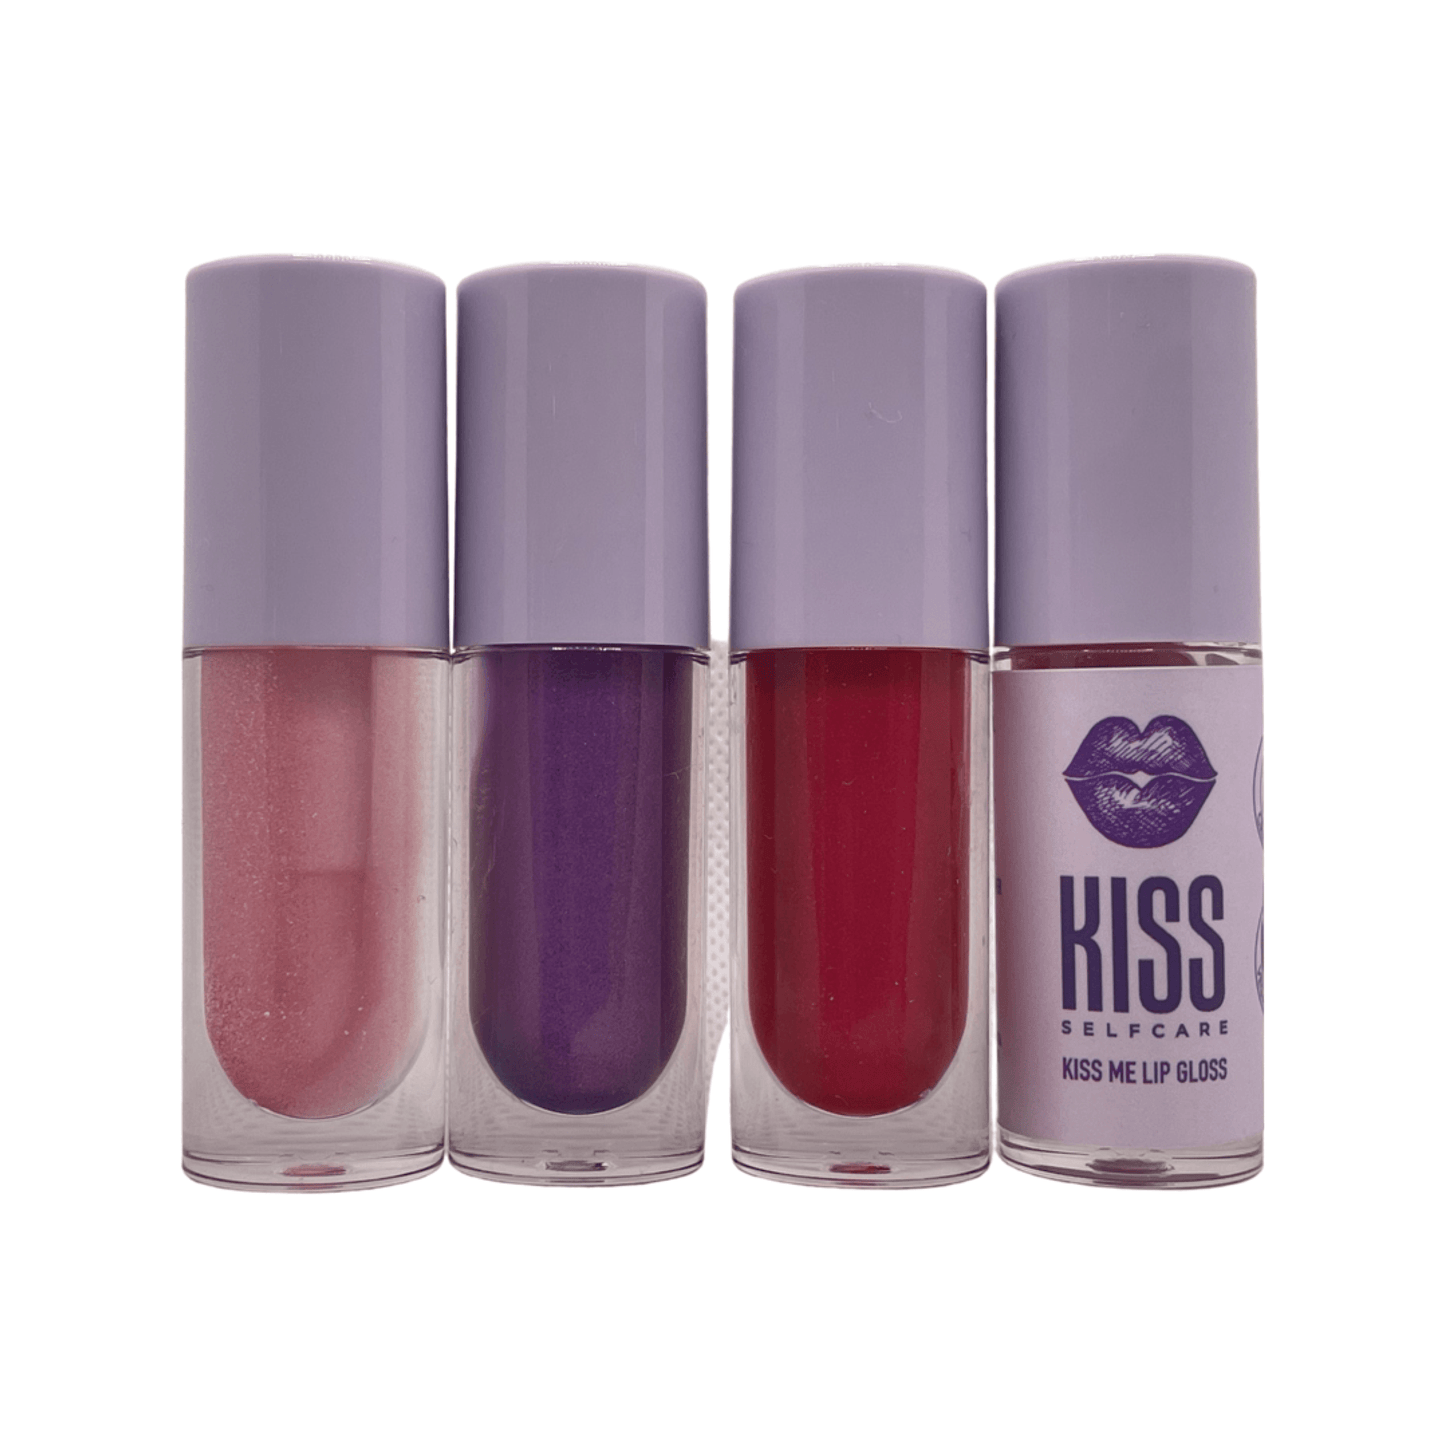 Kiss Me Lip Gloss - Kiss Selfcare